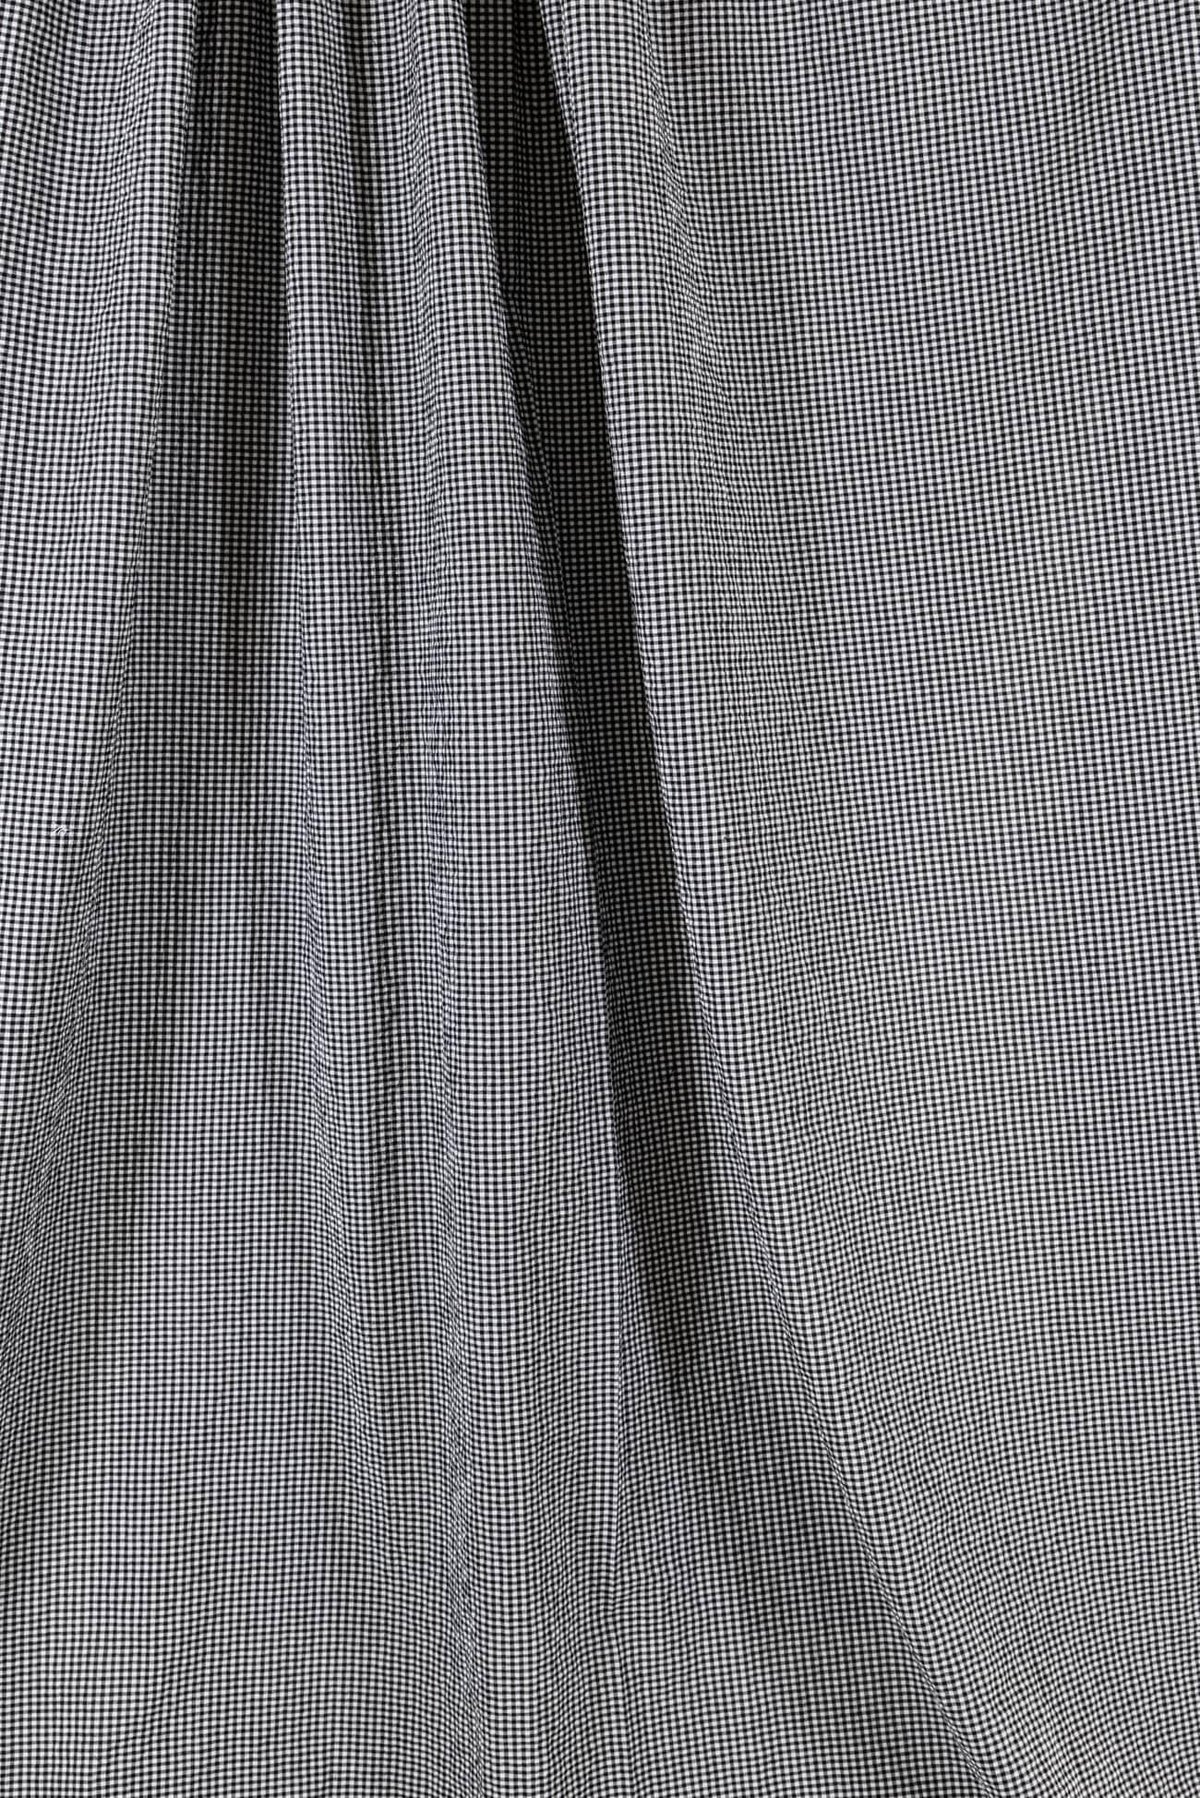 Kiki Gingham Cotton Seersucker Woven - Marcy Tilton Fabrics